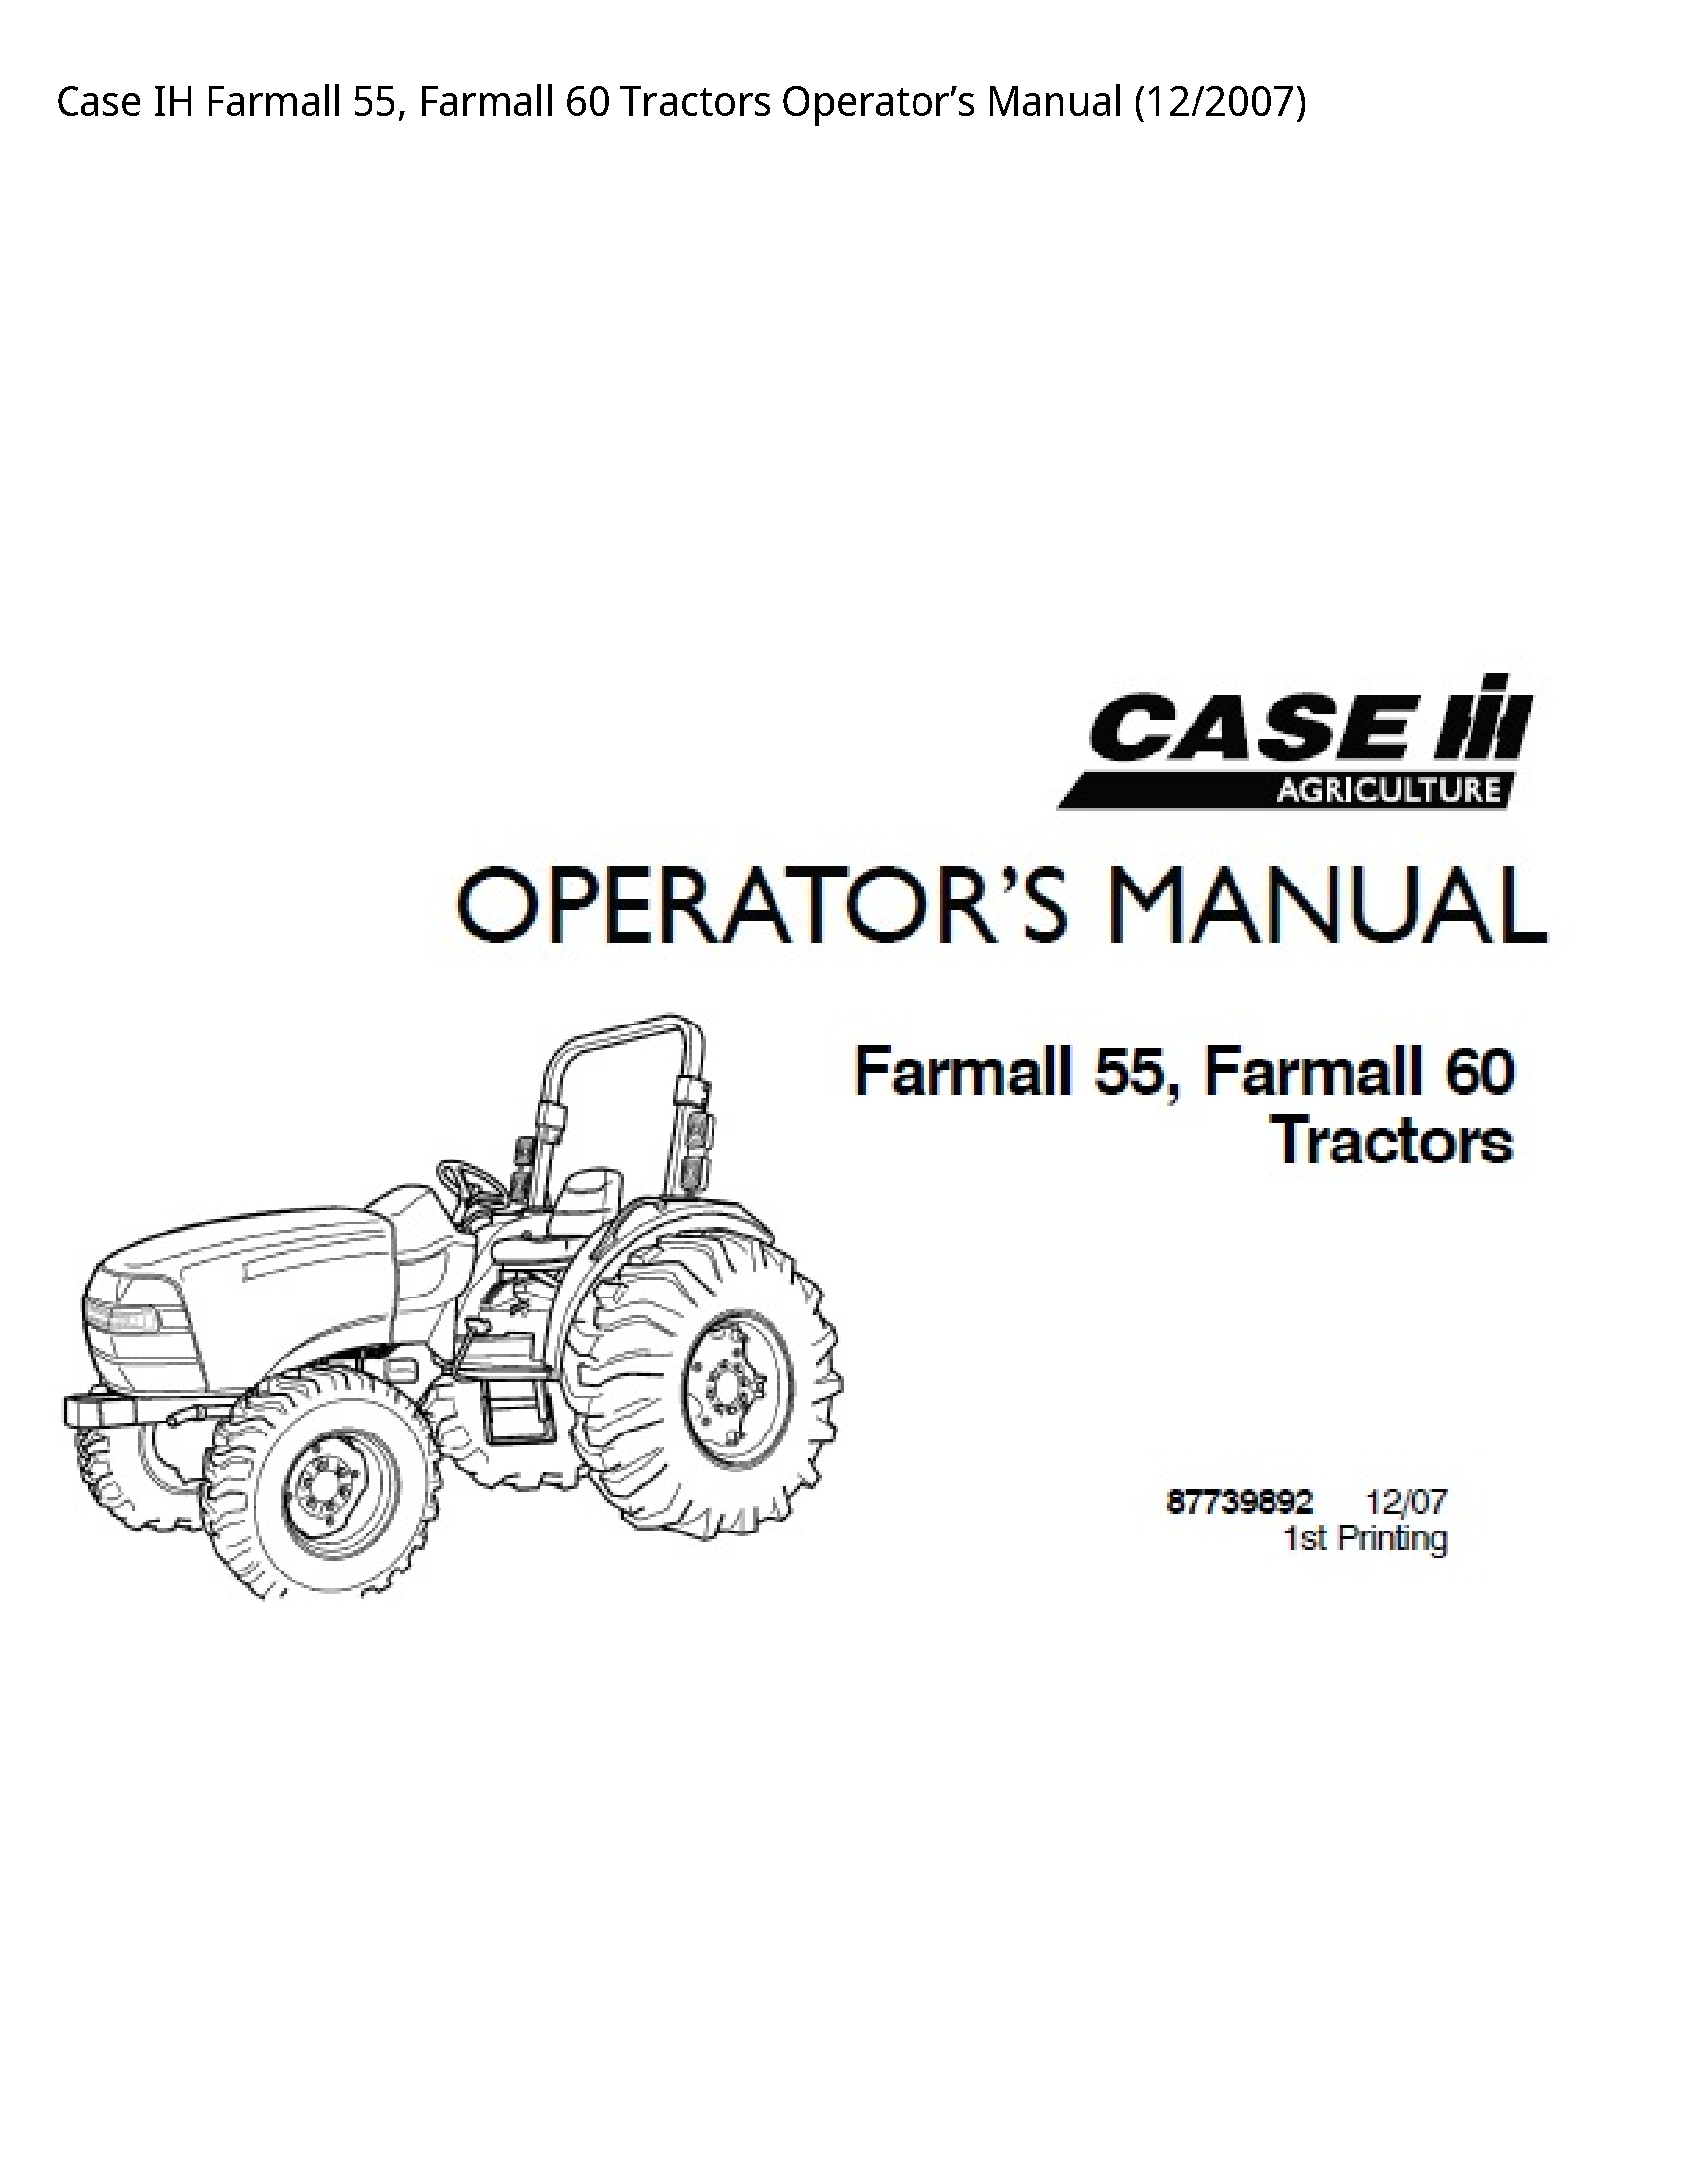 Case/Case IH 55 IH Farmall Farmall Tractors Operator’s manual